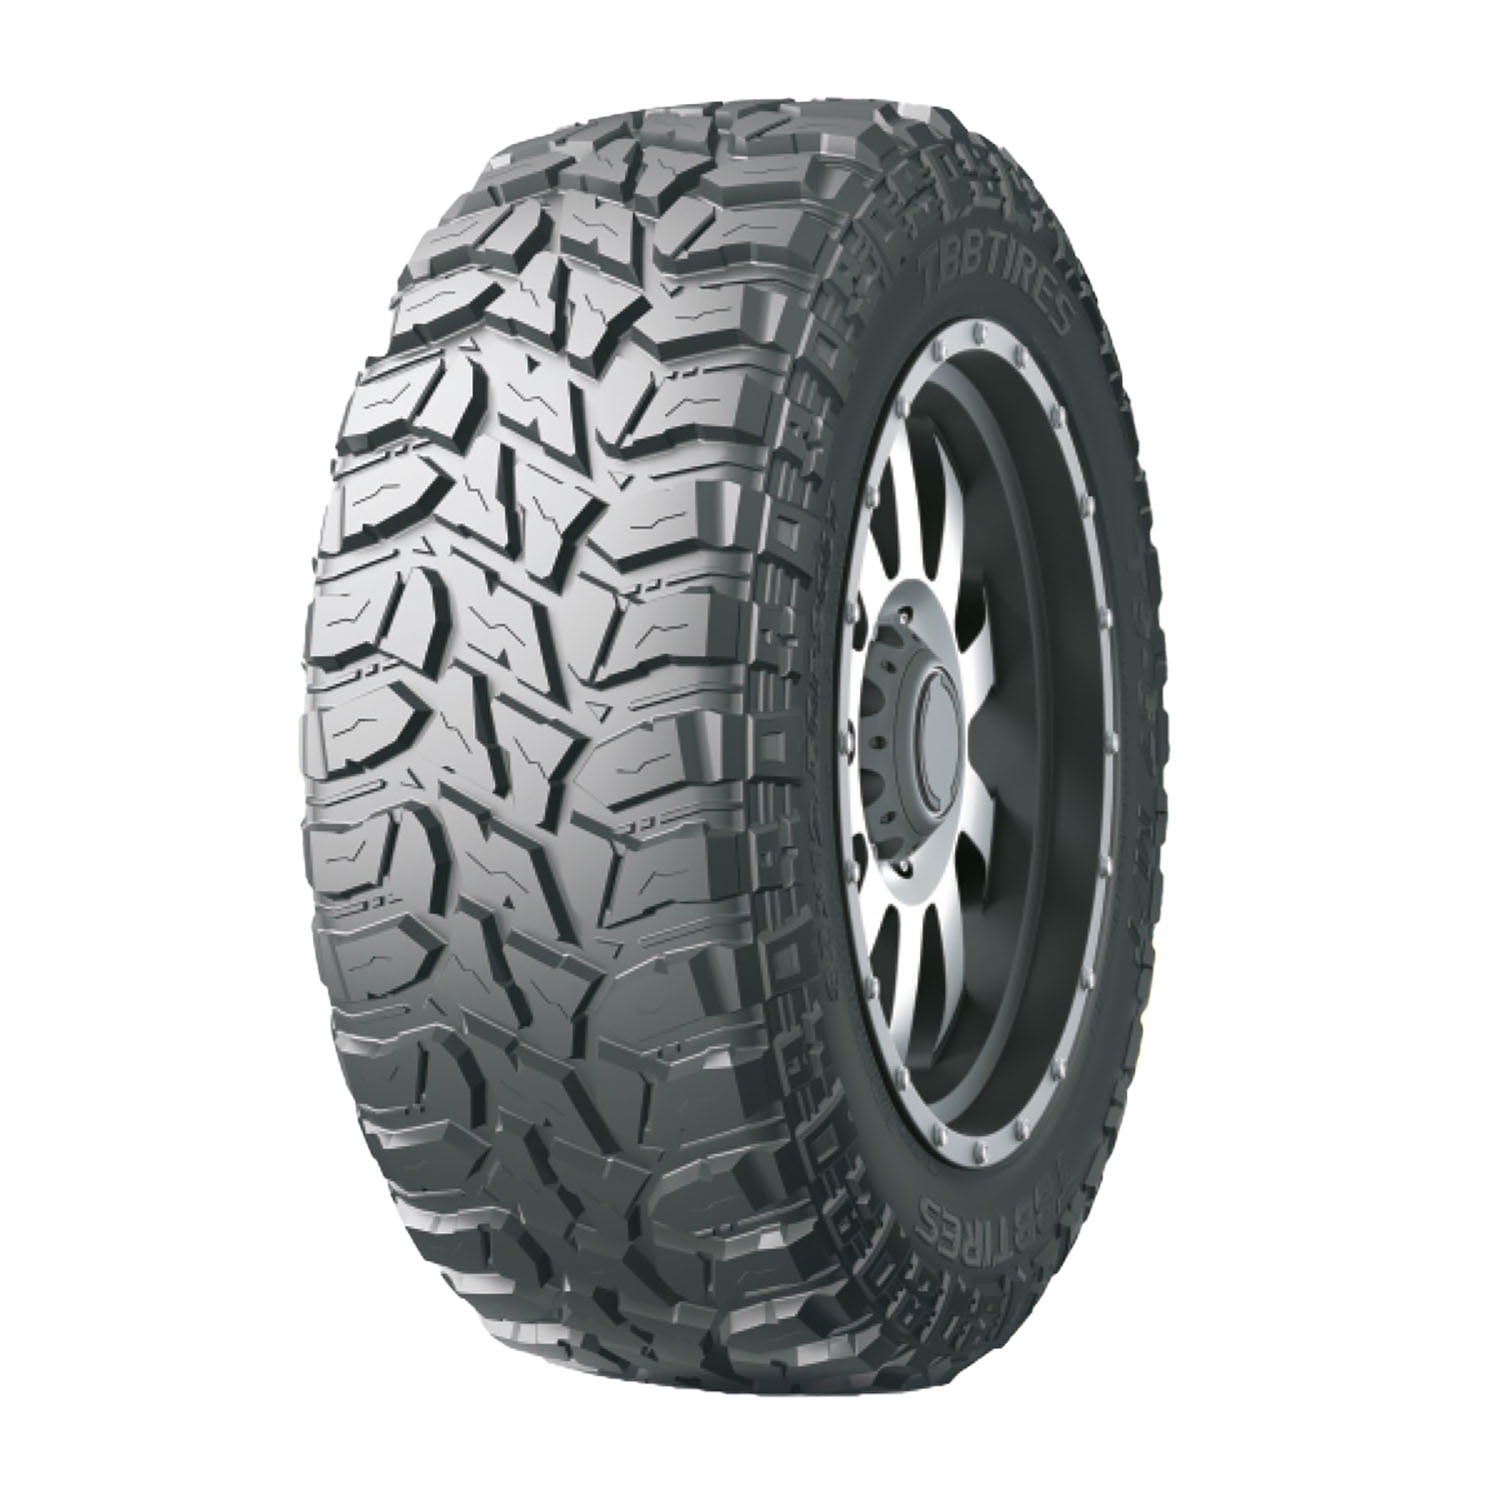 Goodtrip GS-67 M/T Mud Tire 35X12.50R20 121Q LRE BSW 35125020 35x12.5r20 